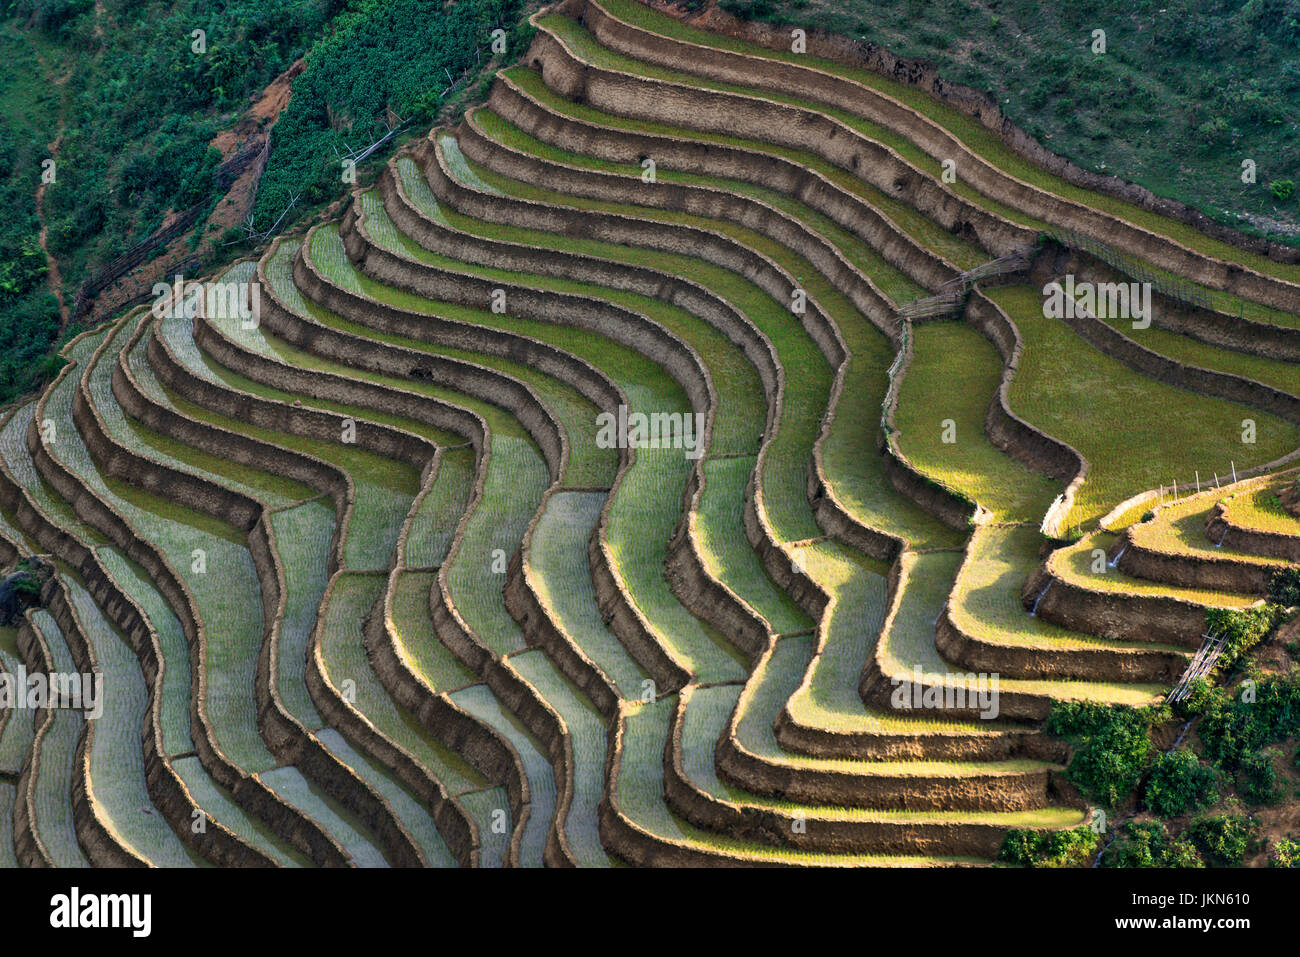 Vista panoramica delle risaie vicino a Sapa, nel Vietnam del nord. Foto Stock